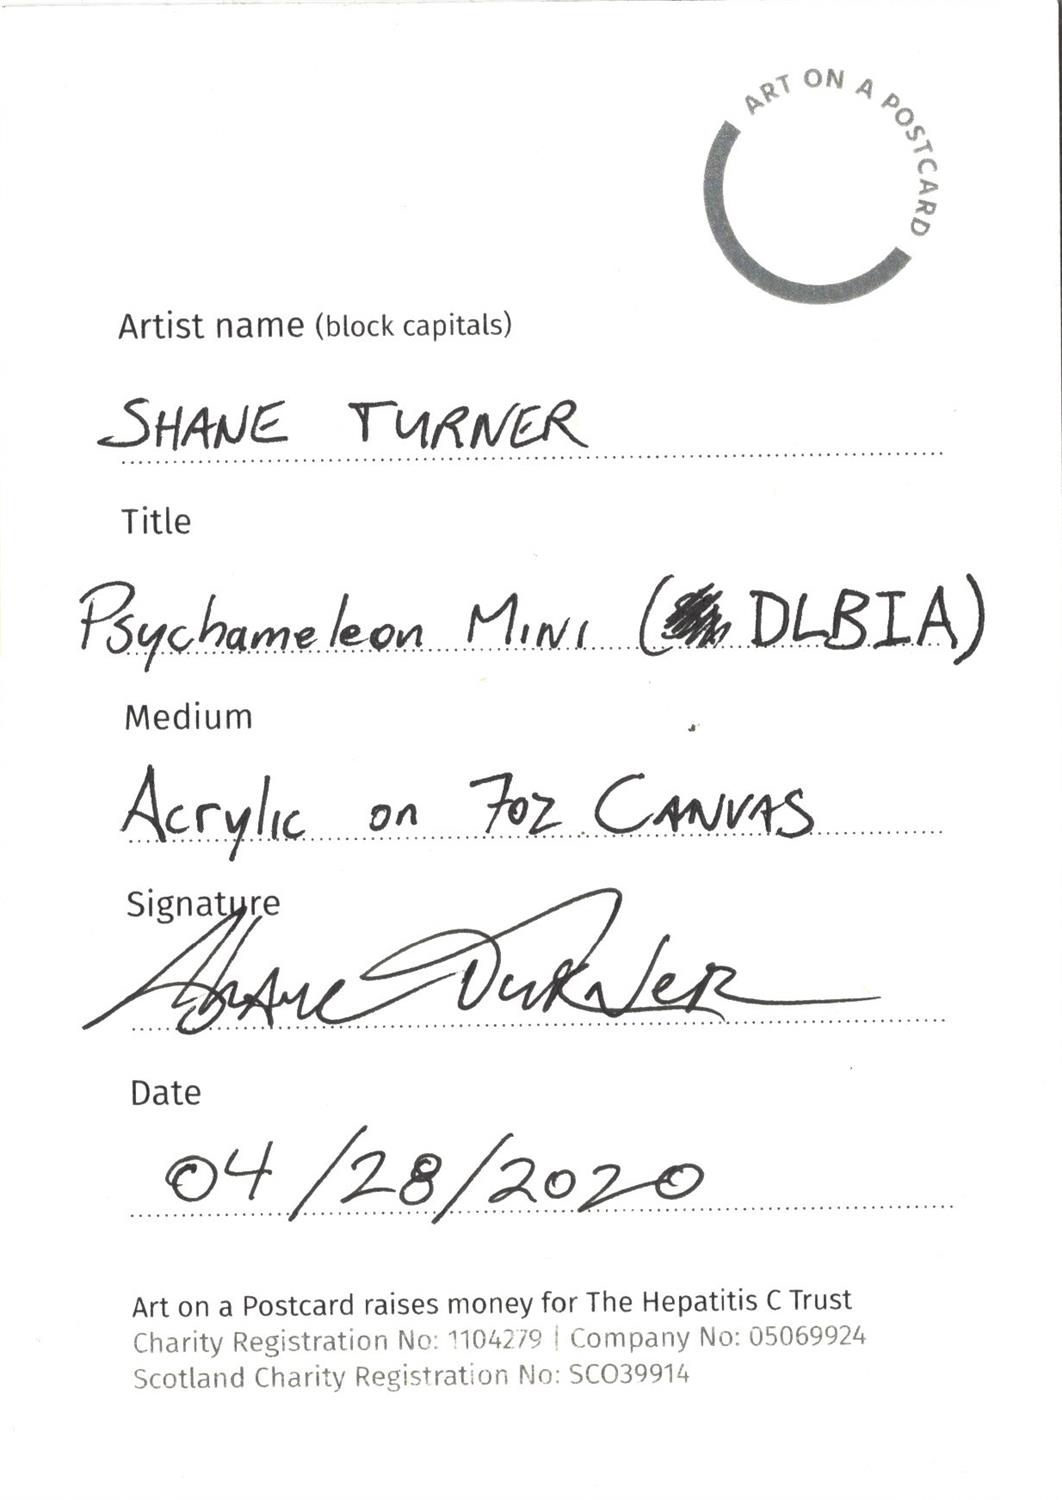 Shane Turner, Psychameleon Mini (BLBIA), 2020 - Image 3 of 3